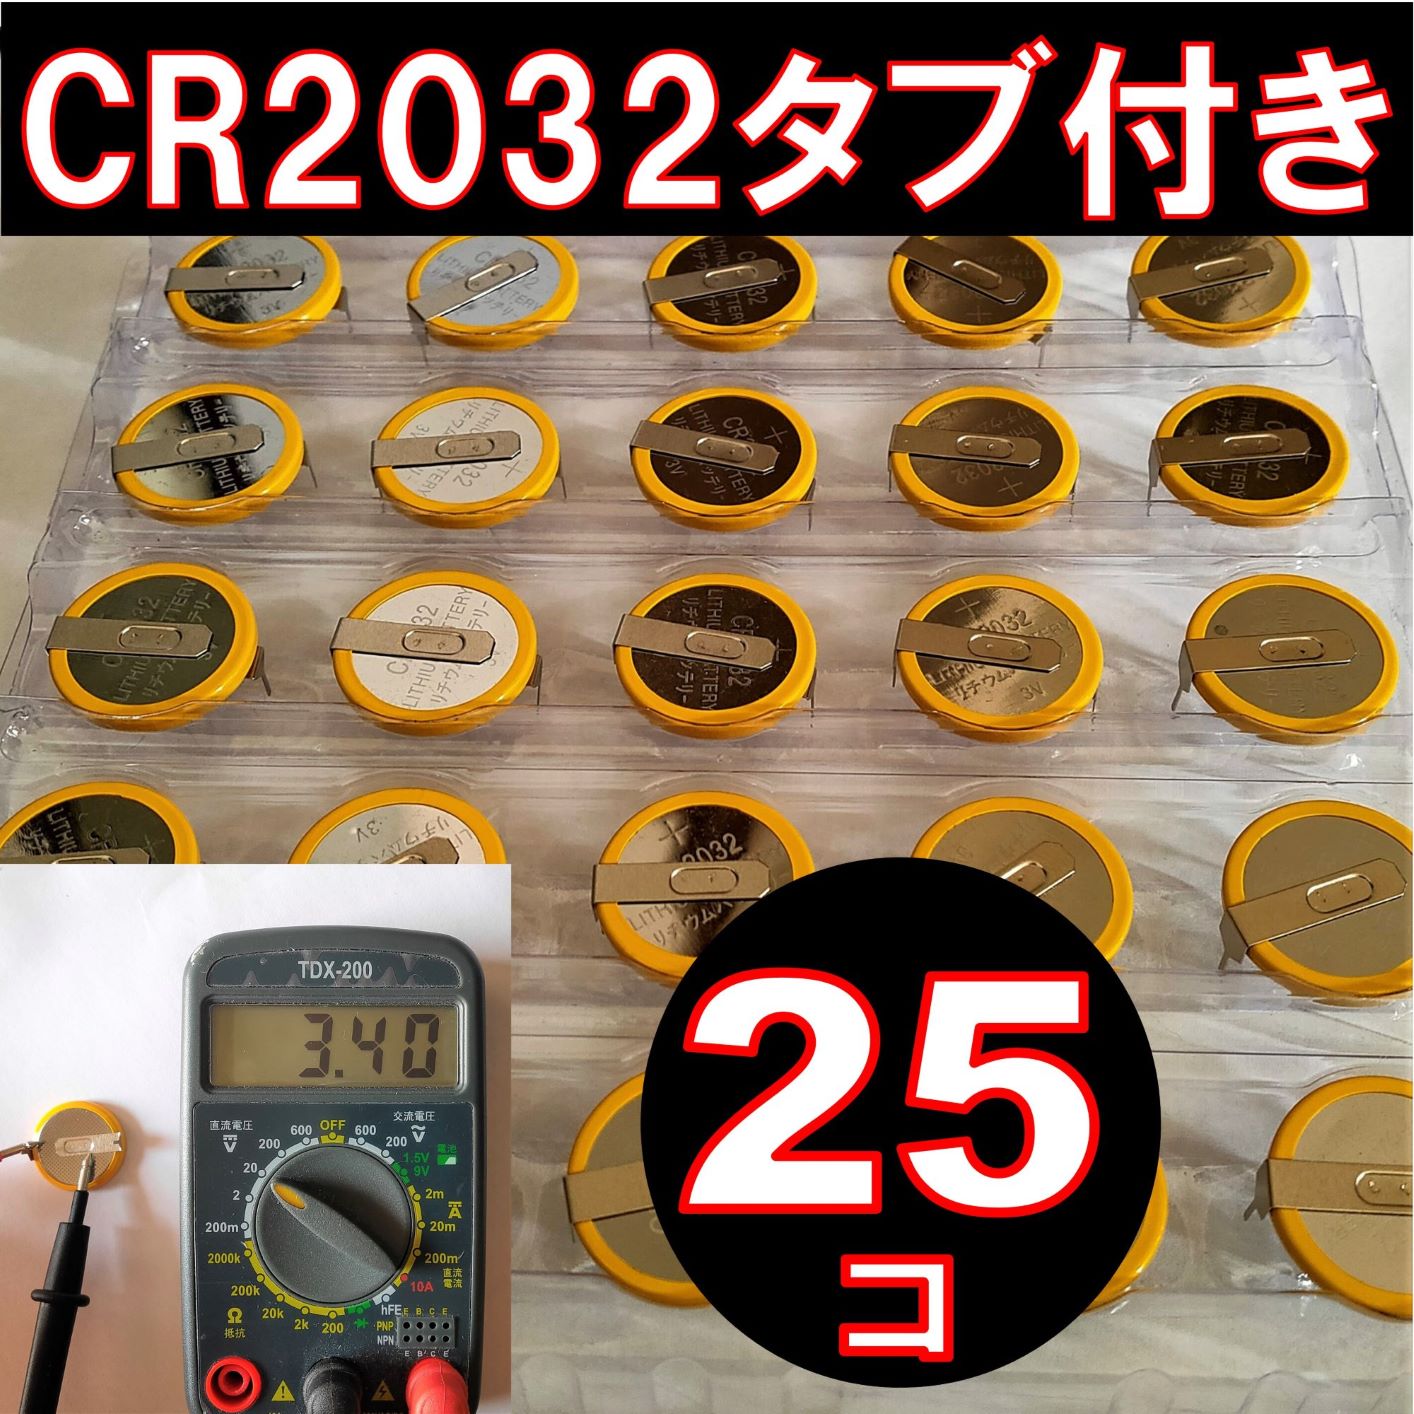 CR2032 タブ付き ボタン電池 25個 タブ付き コイン電池ファミコン スーパーファミコン